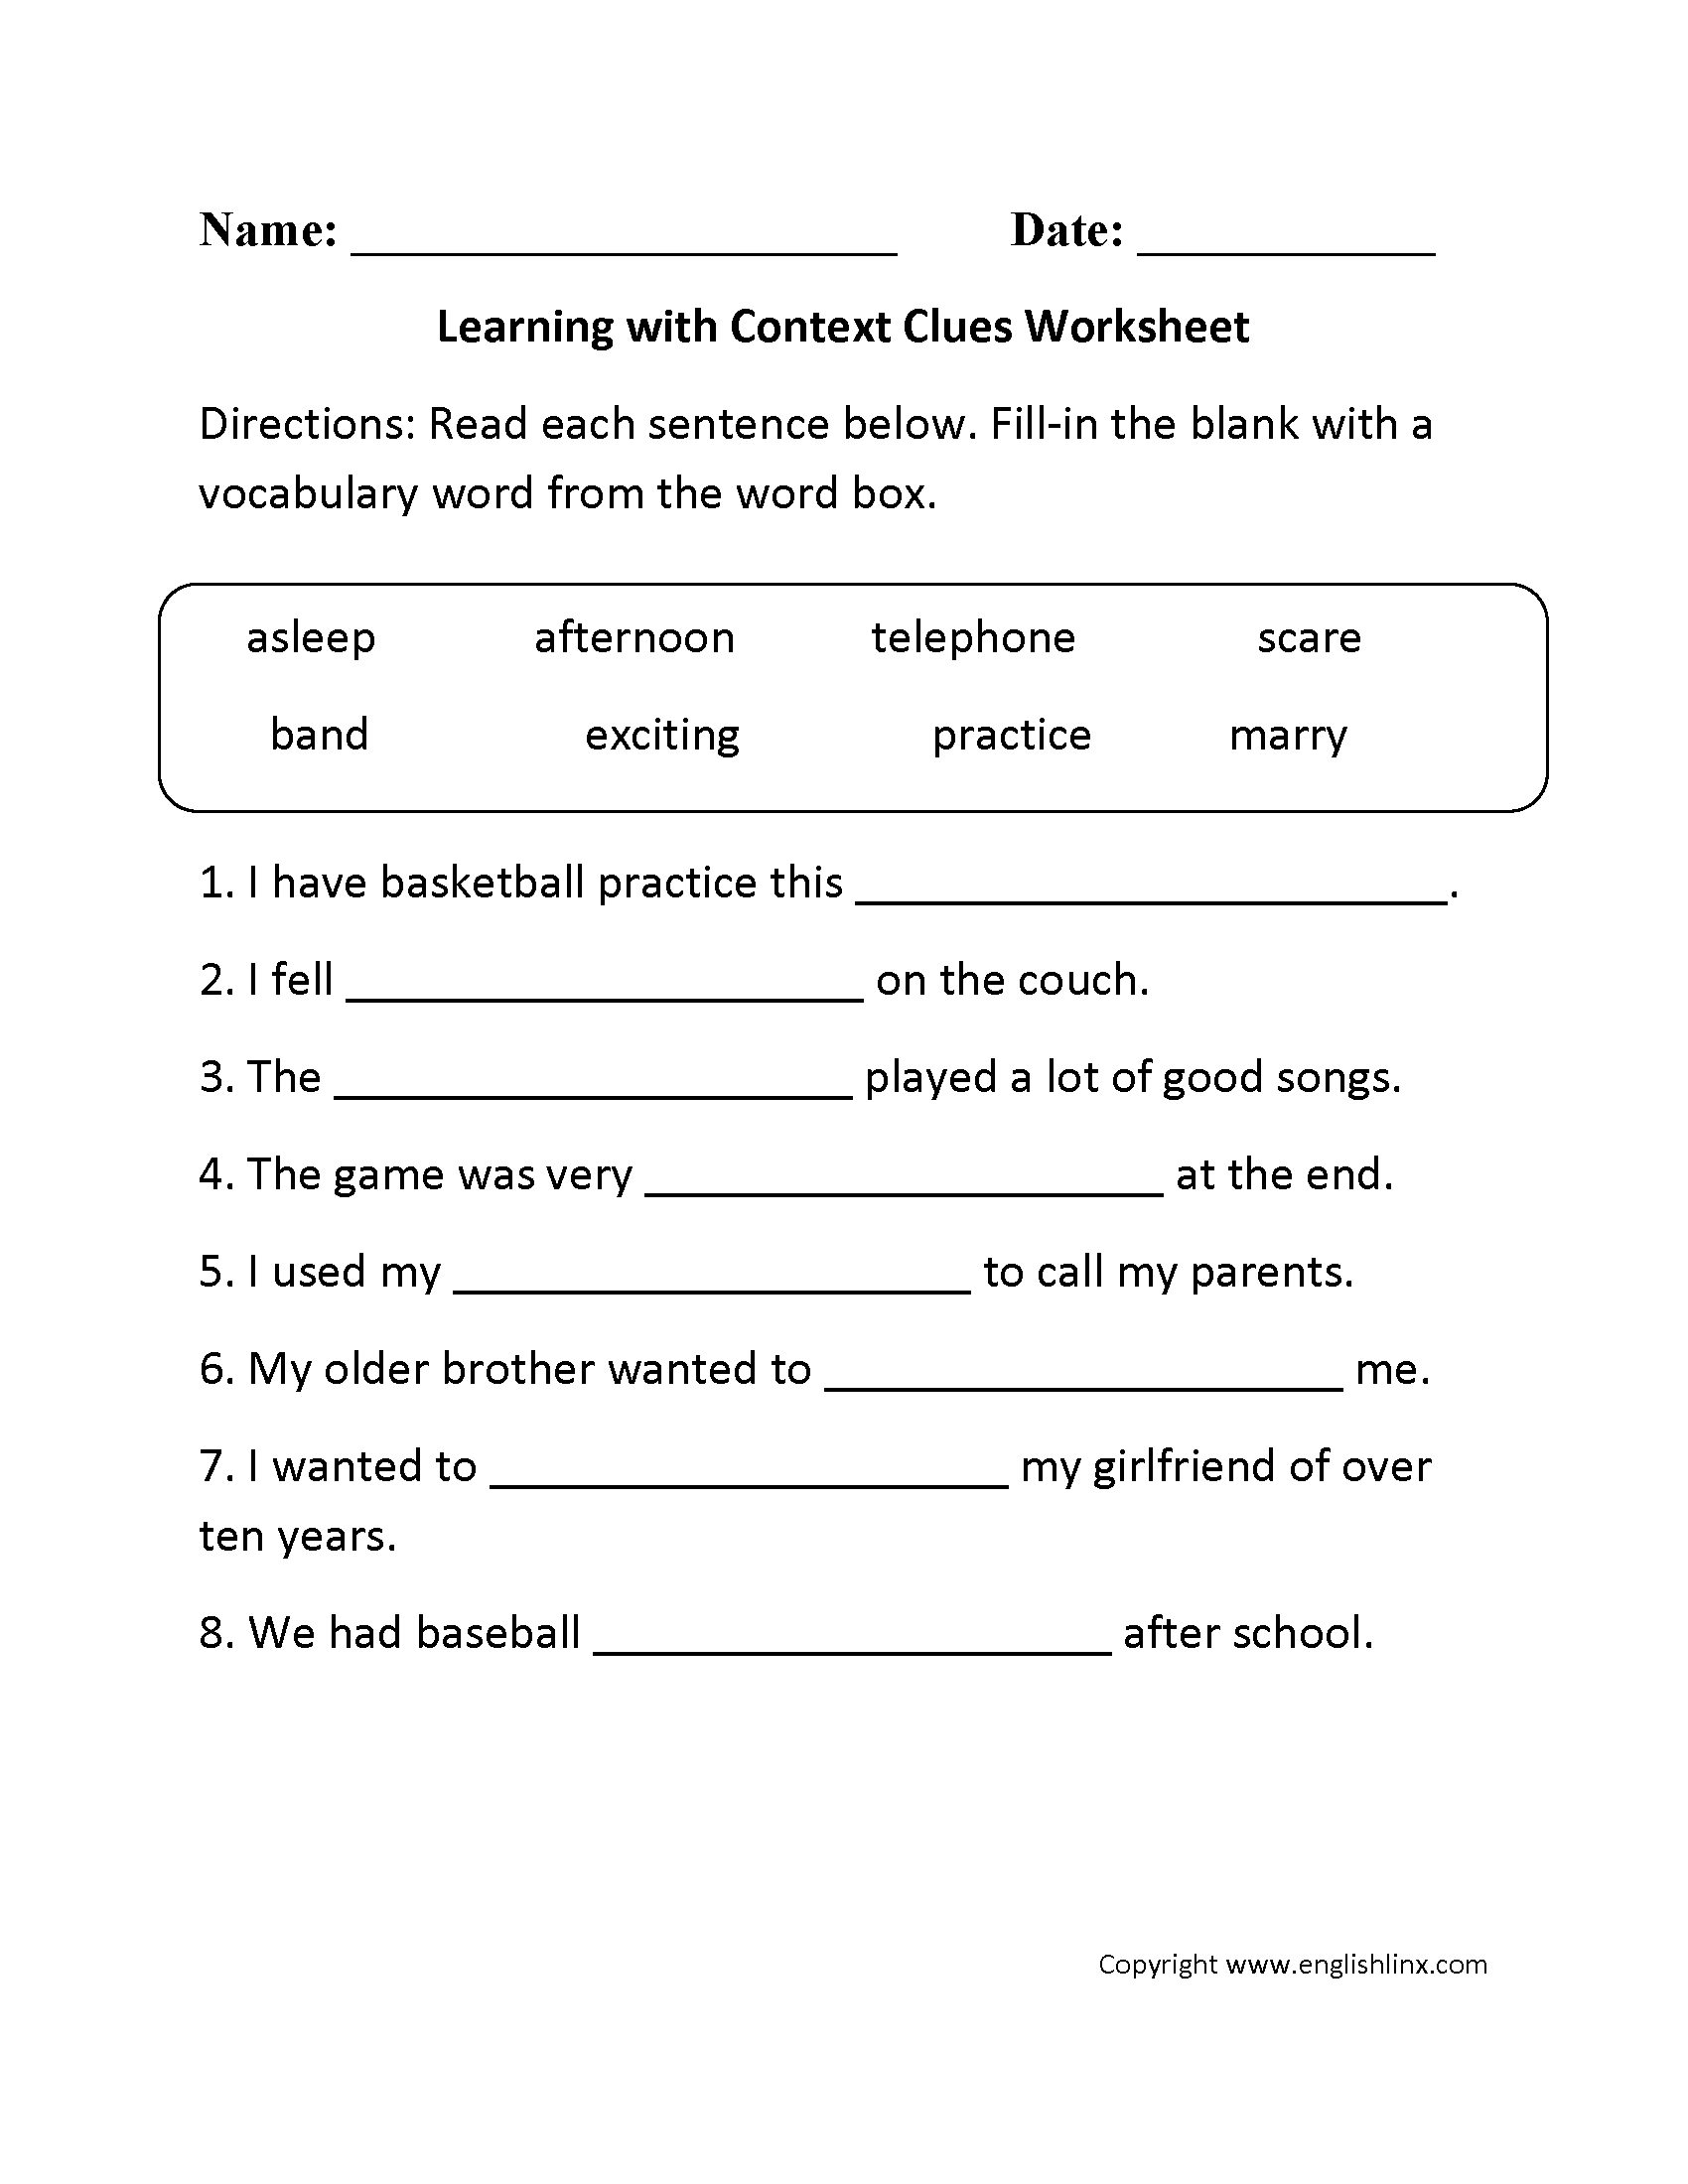 Context Clues Worksheets 3Rd Grade db excel com